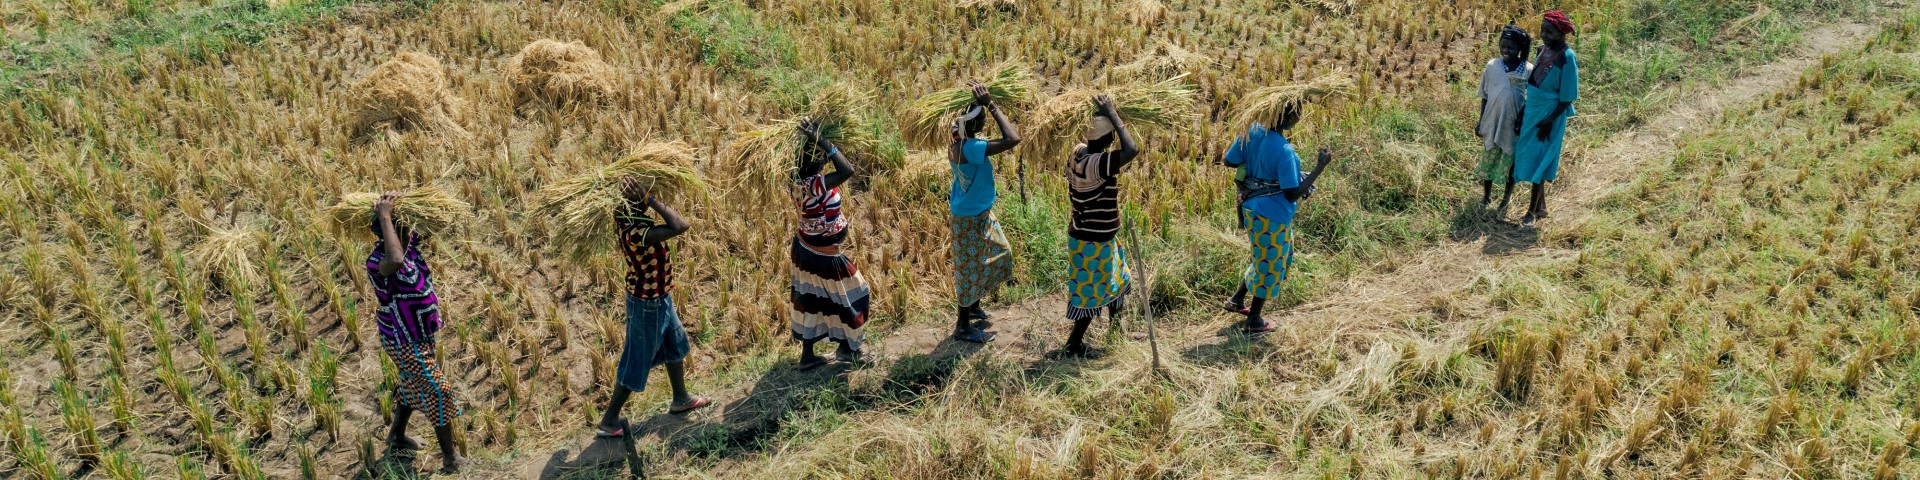 Des paysan·ne·s portent leur récolte de céréales. © GIZ / Ollivier Girard